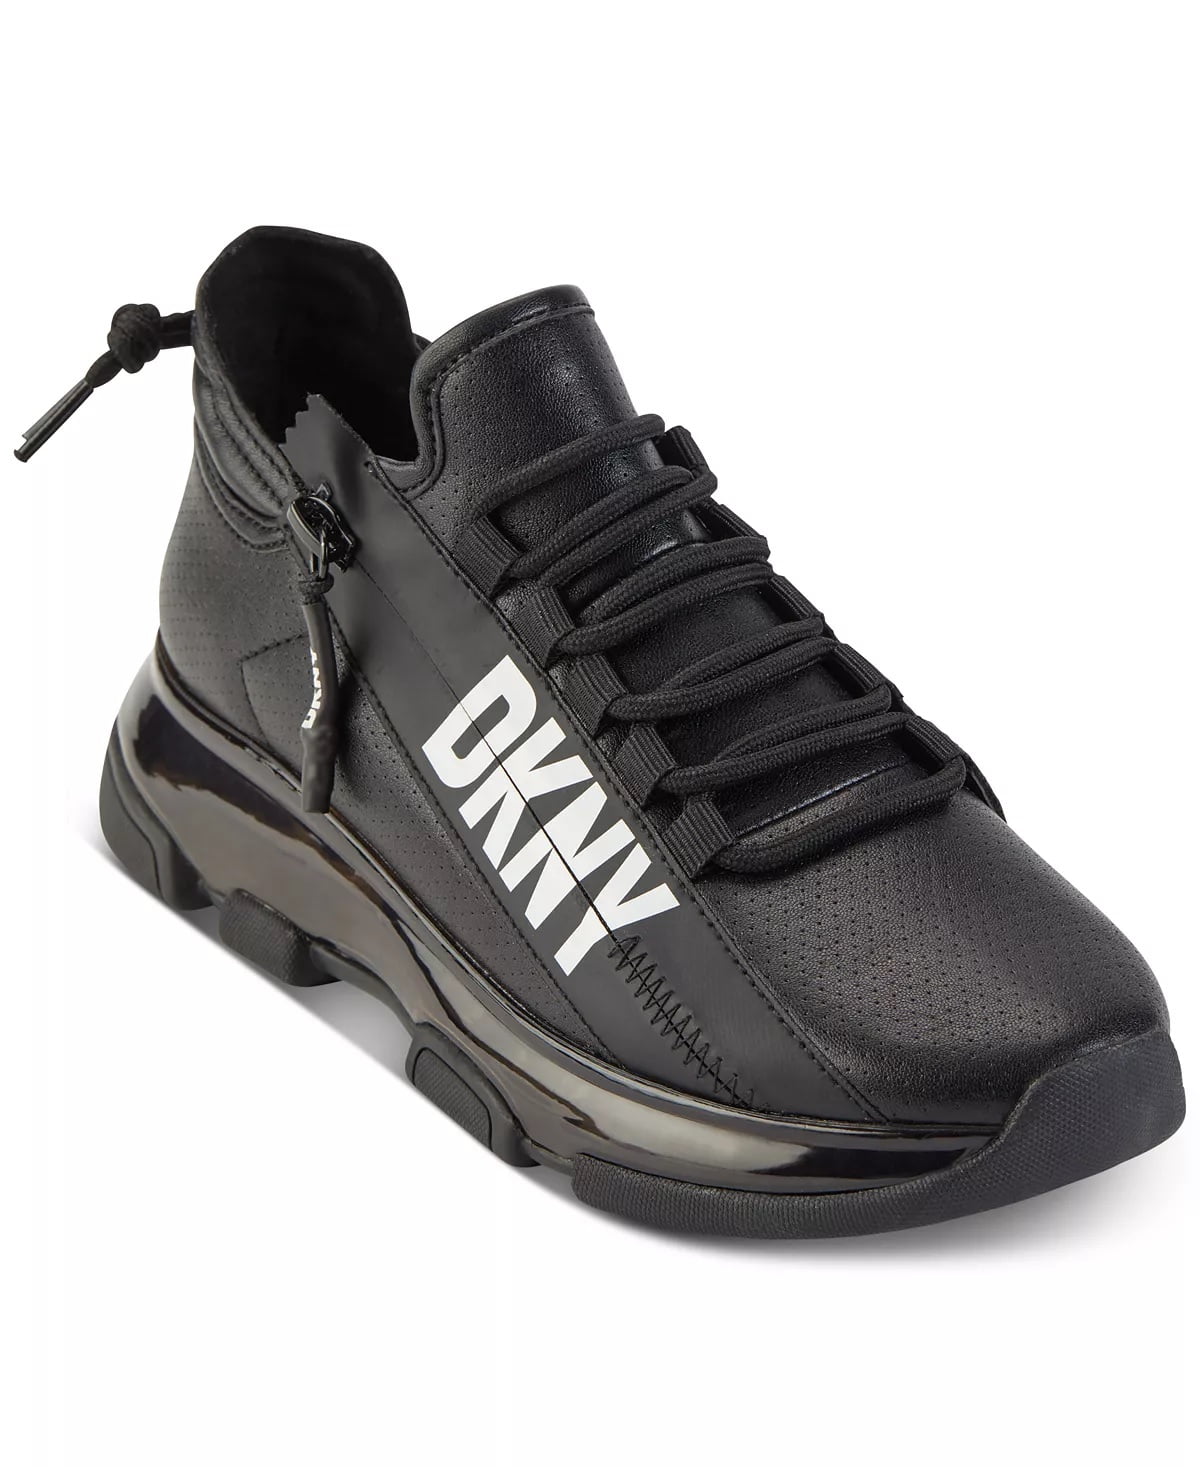 DKNY Womens Tokyo Slip On Sneaker, Adult, Black/White, 9.5 M US